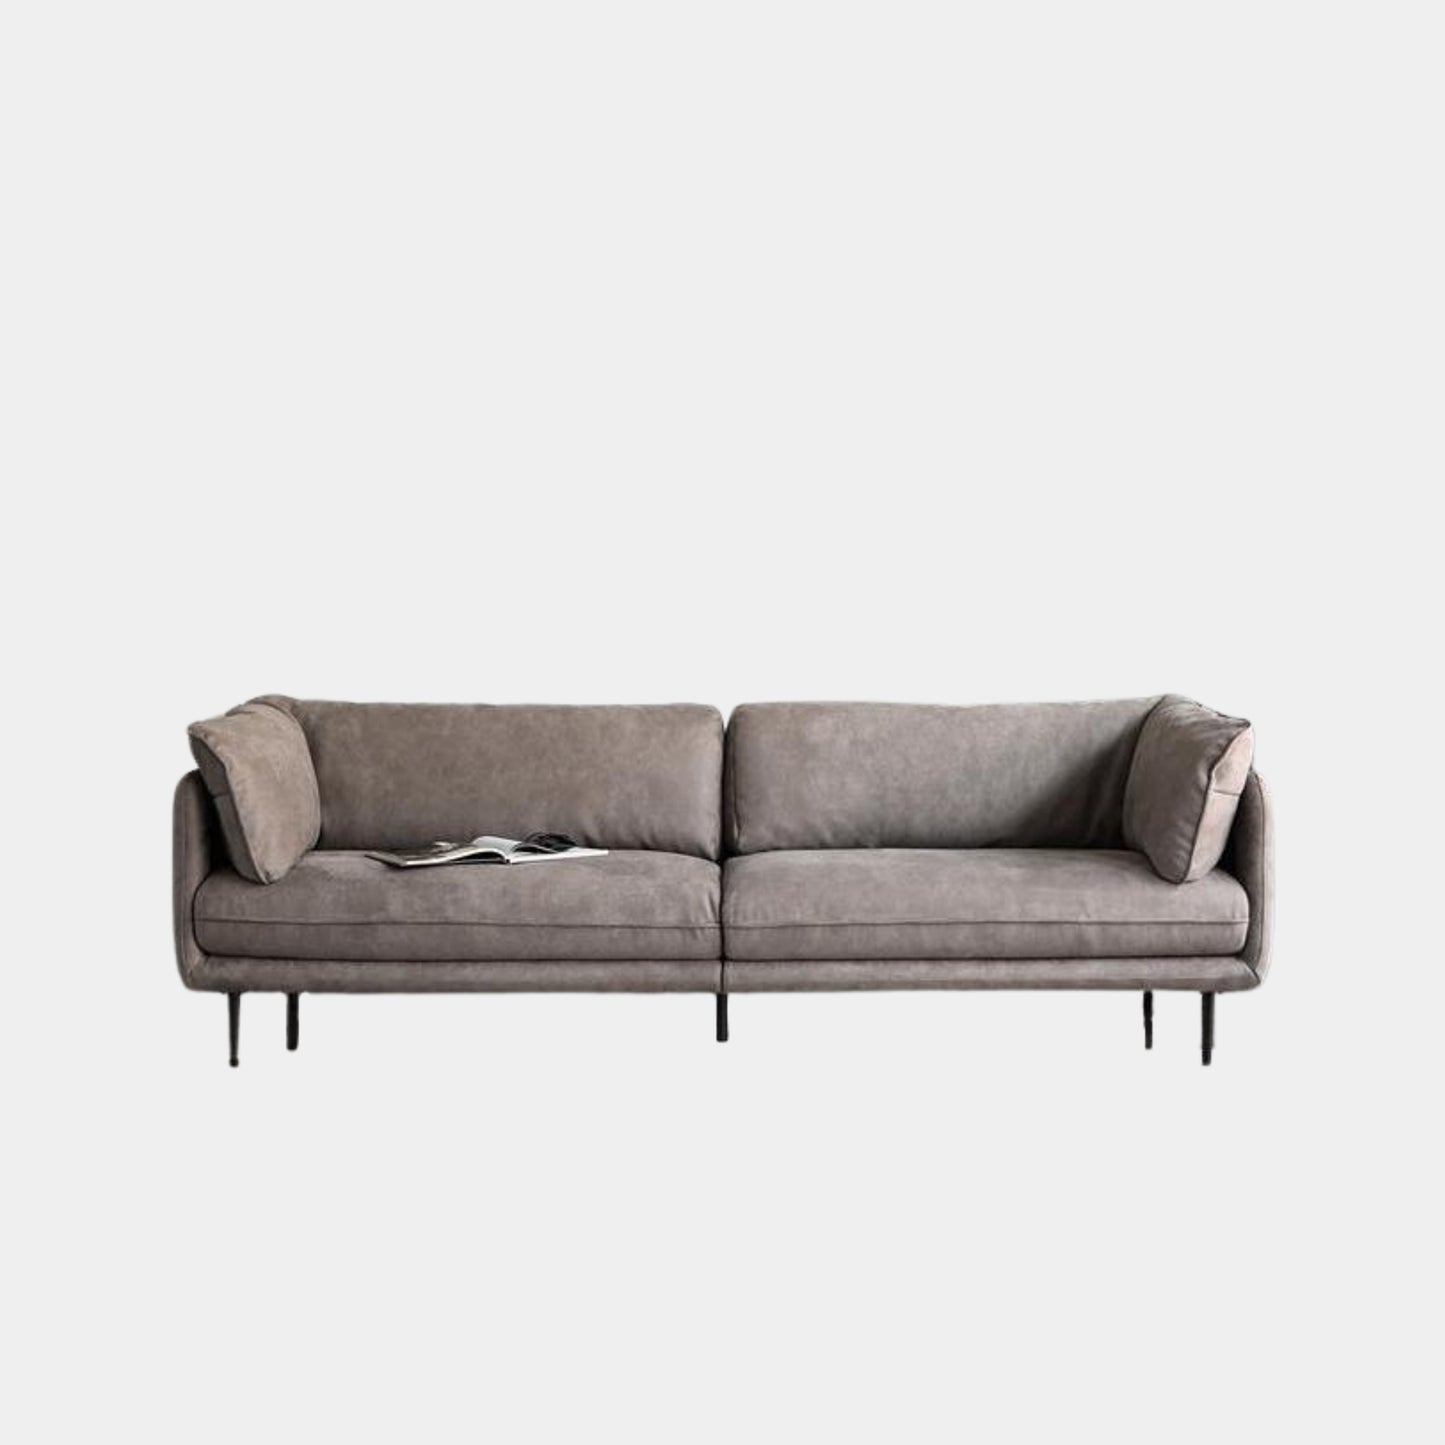 Cuddle grey fabric sofa